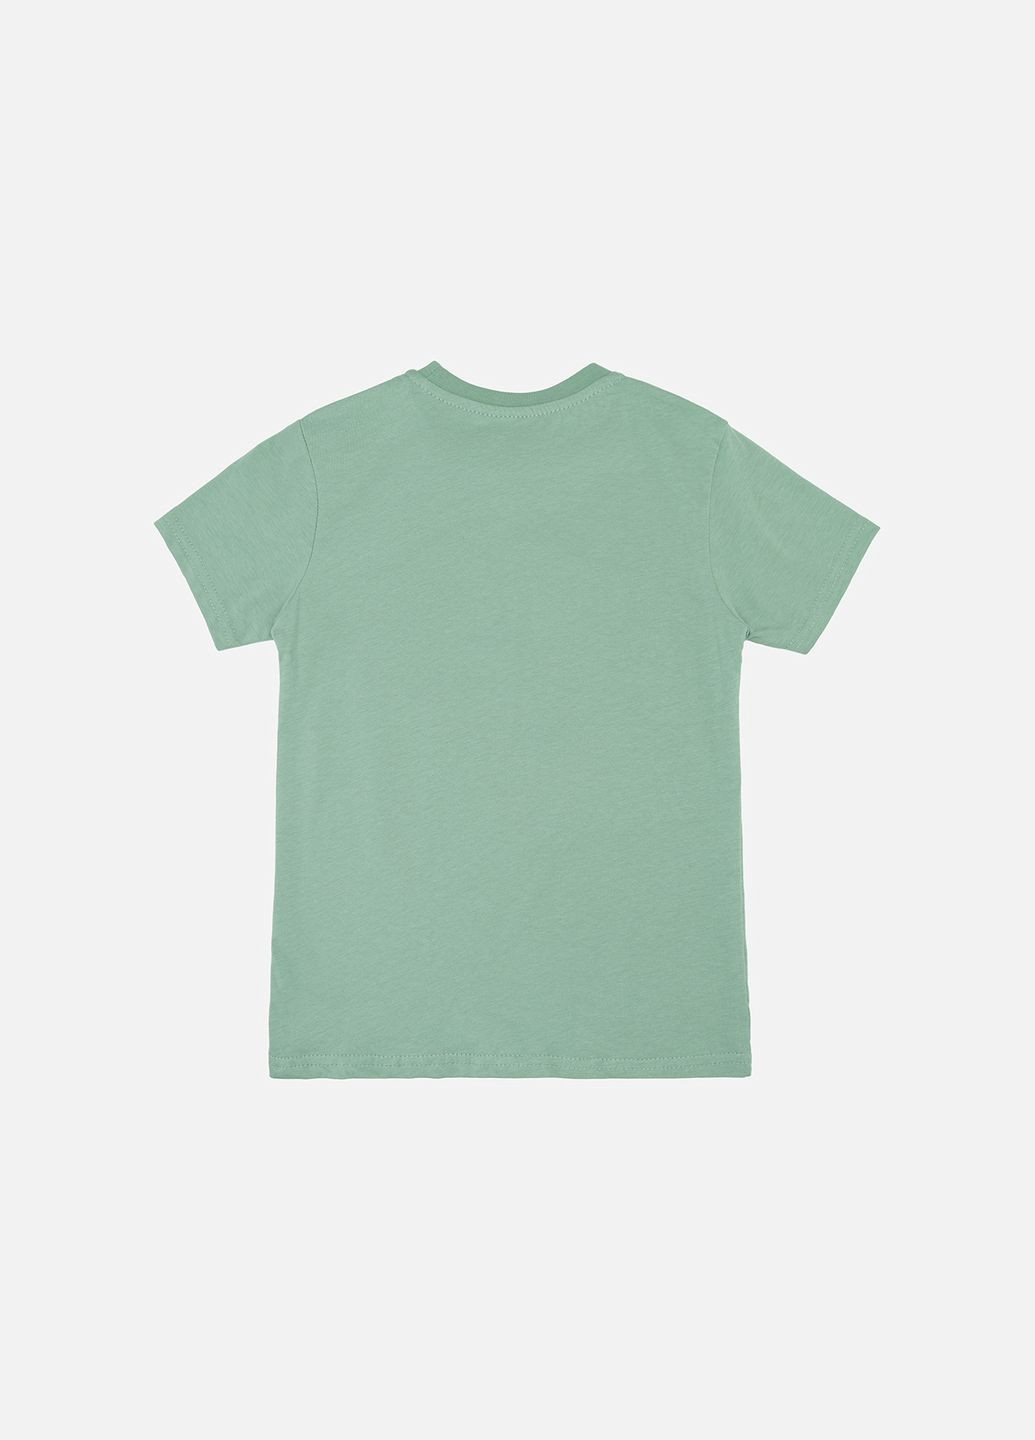 Оливковая летняя футболка с коротким рукавом для мальчика цвет оливковый цб-00246199 No Brand